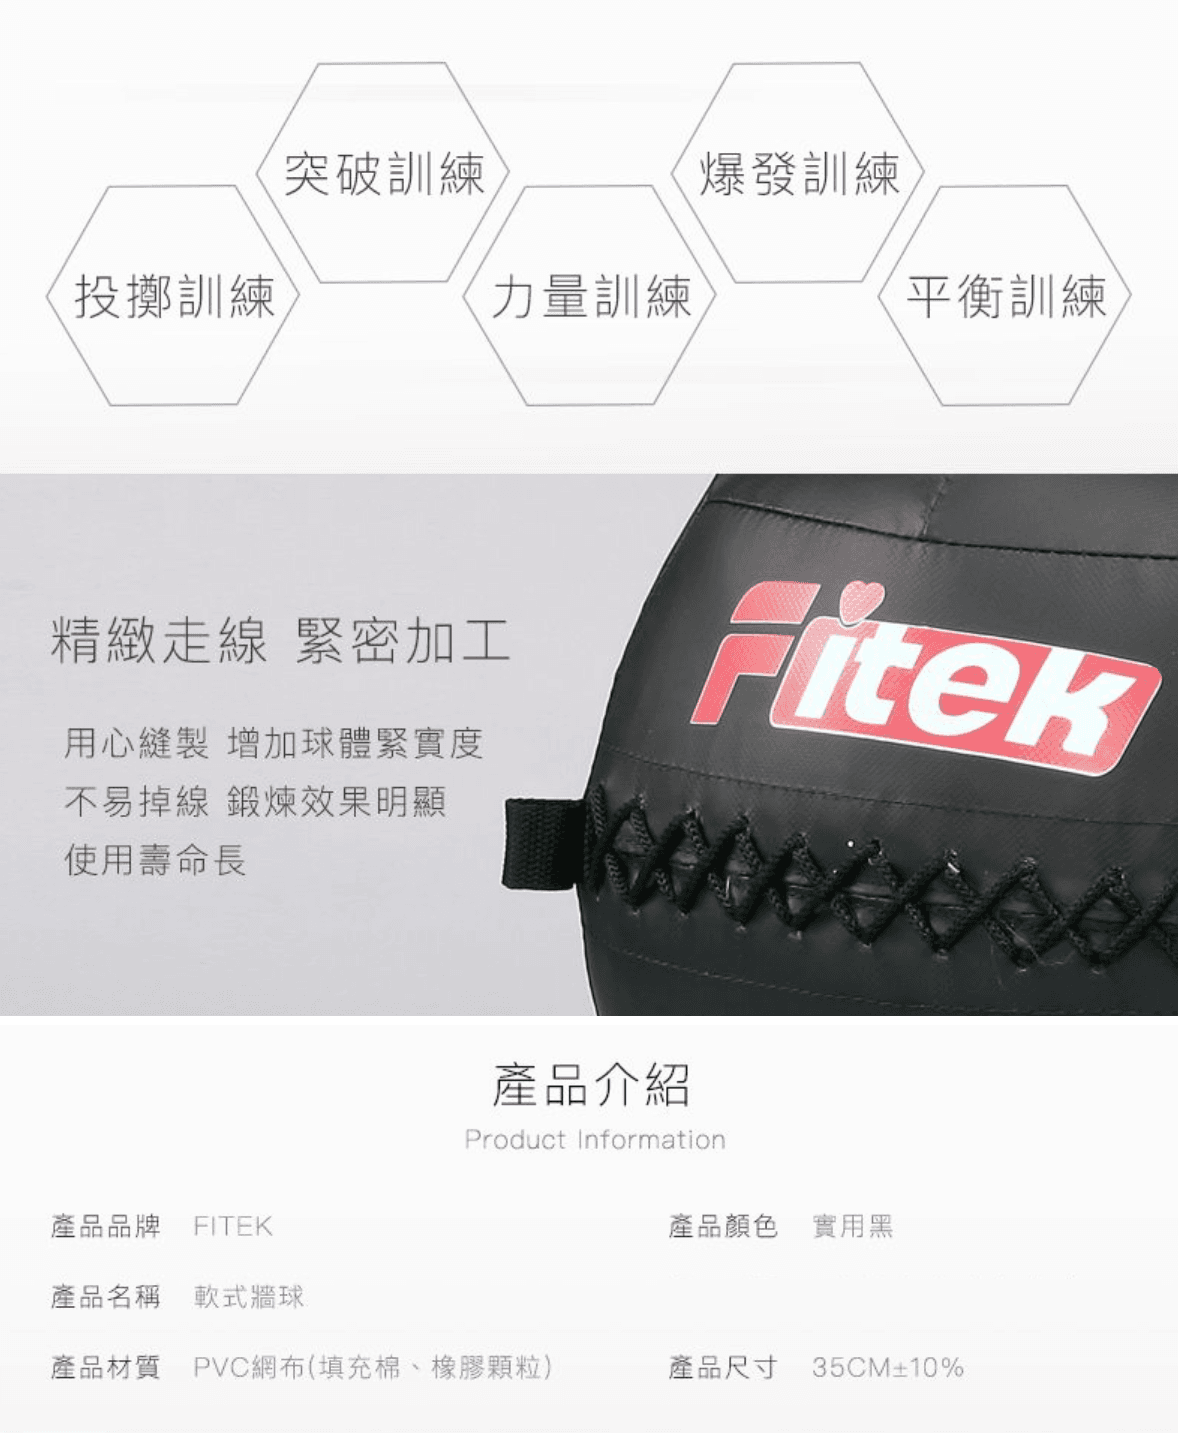 軟式藥球牆球6KG【Fitek】 4